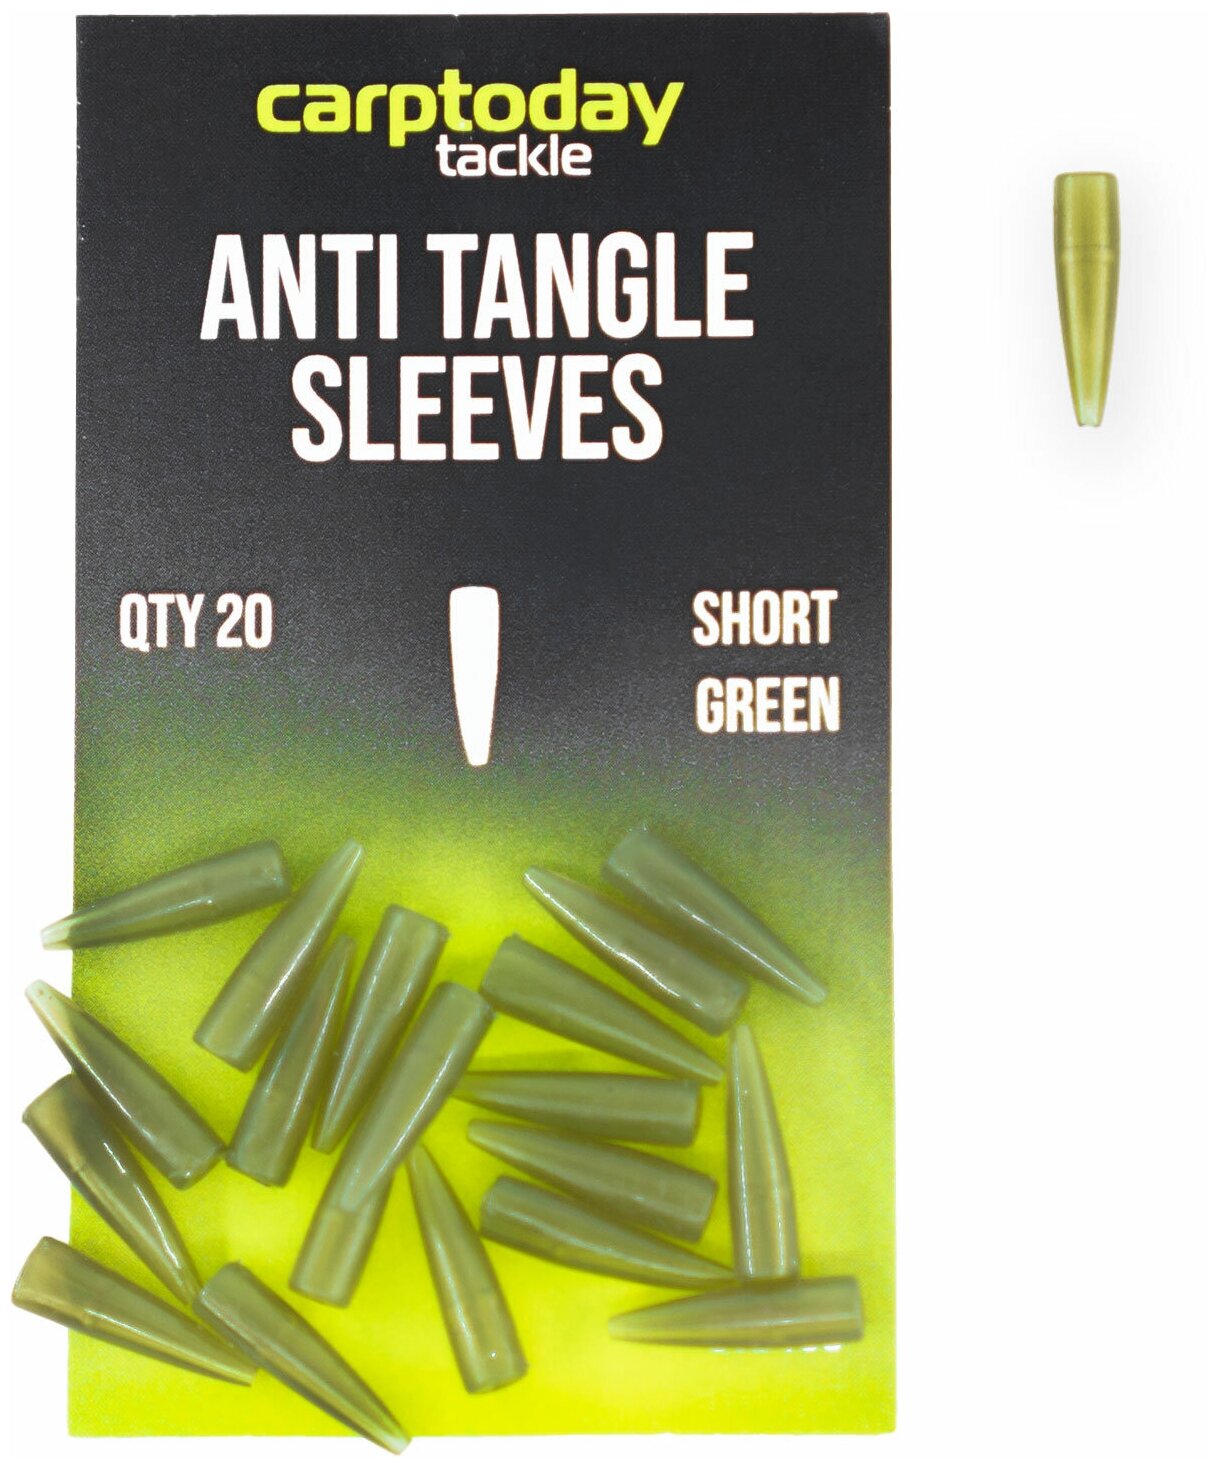 Отводчики короткие Carptoday Tackle Anti Tangle Sleeves Short зеленые